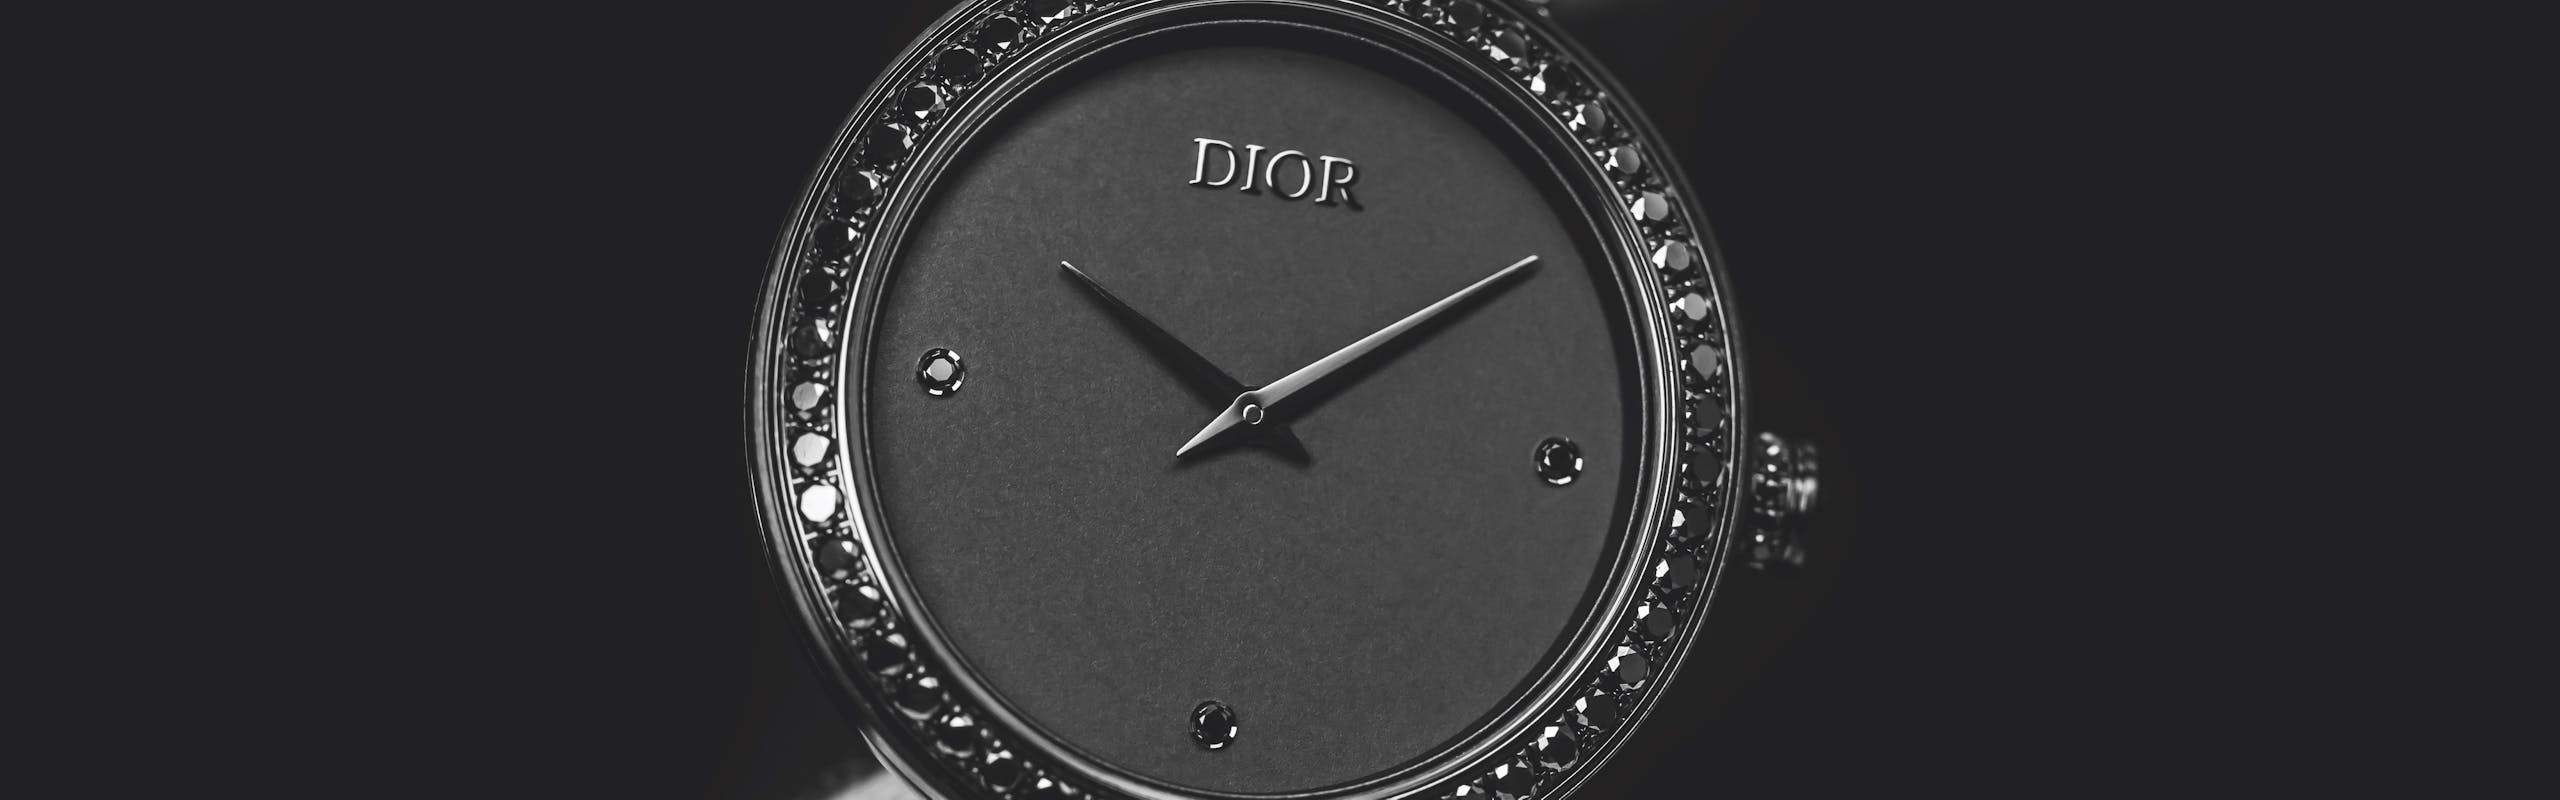 Dior La De de Dior timepiece in black with diamonds